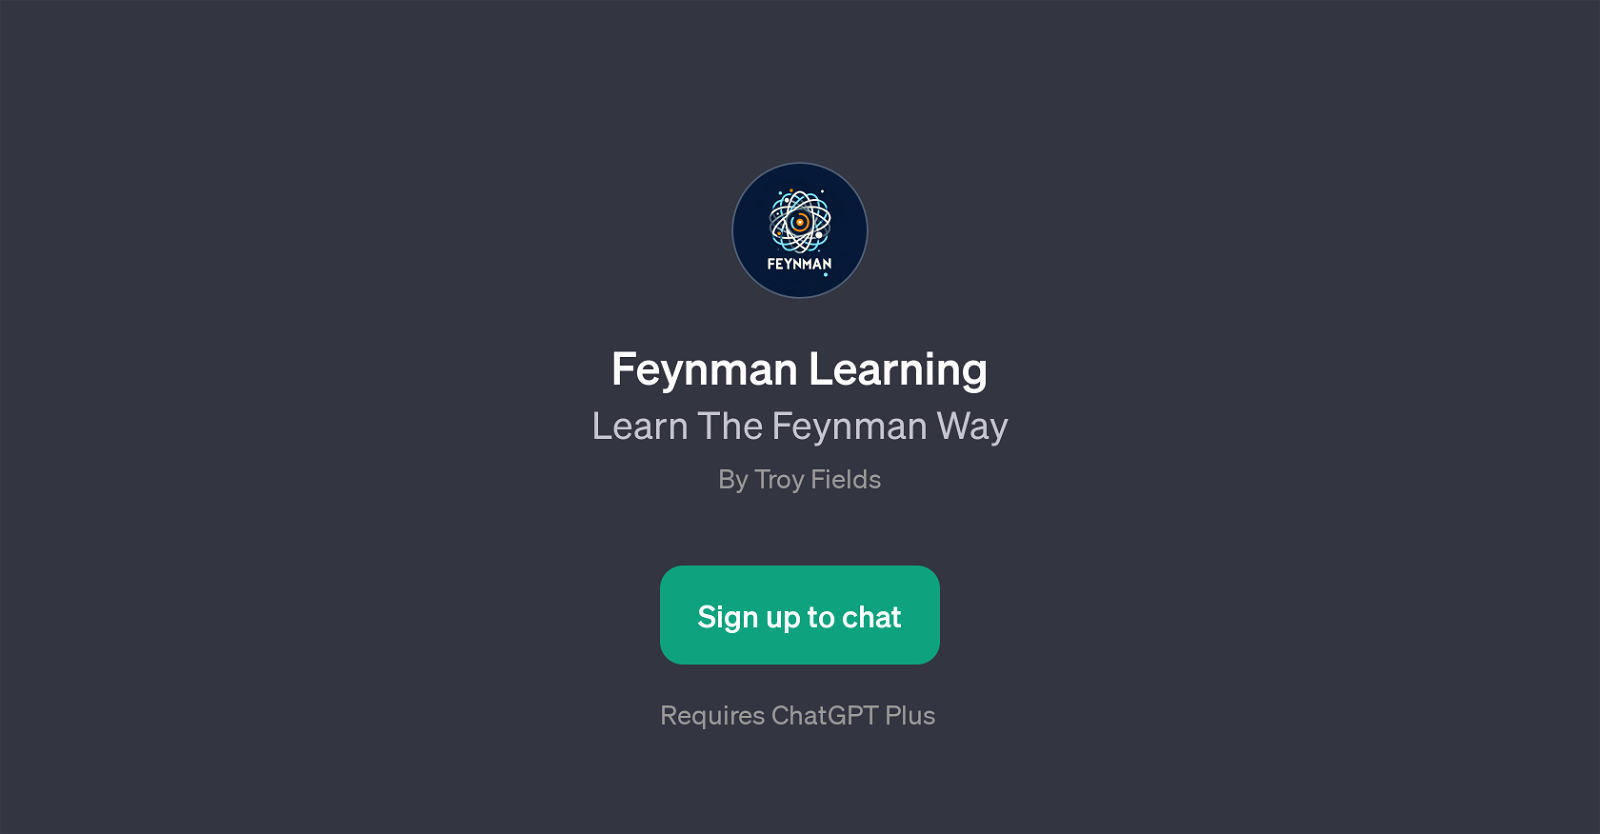 Feynman Learning website